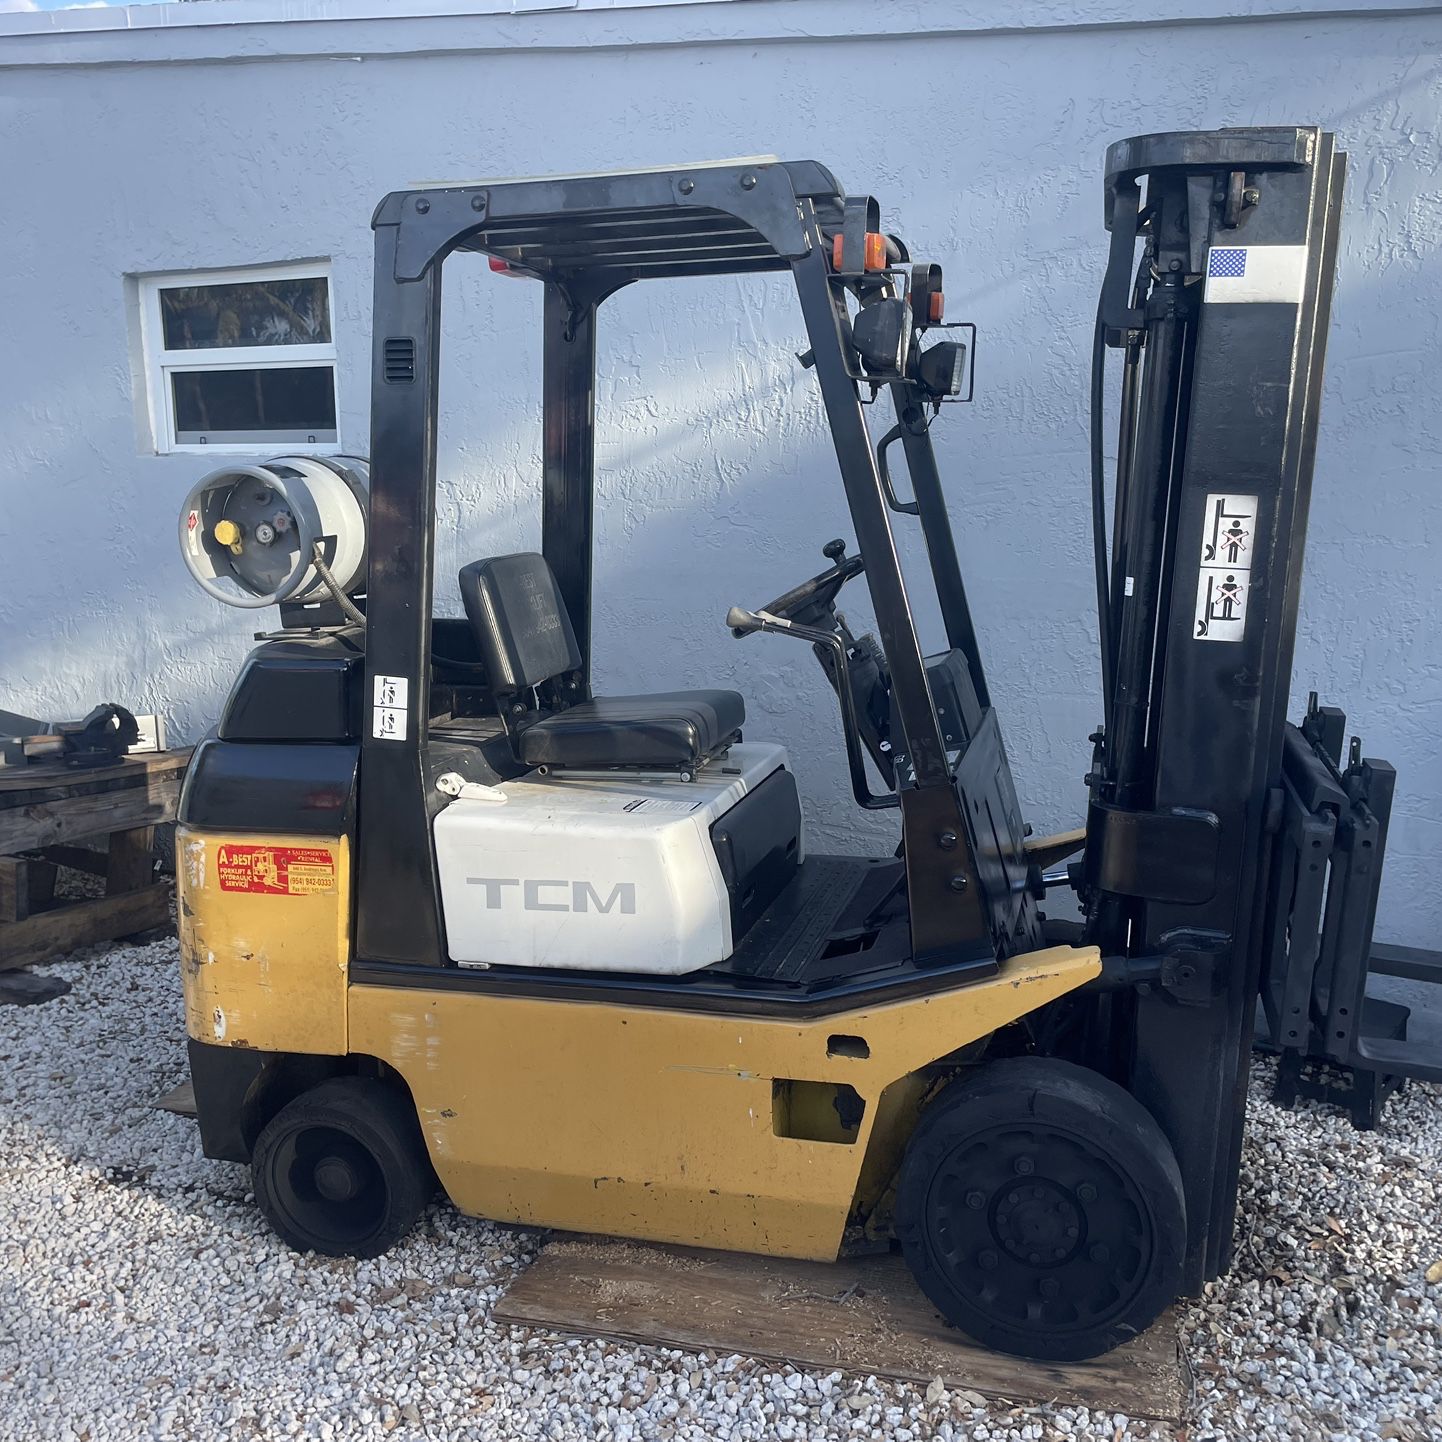 Forklift 5000 Lb